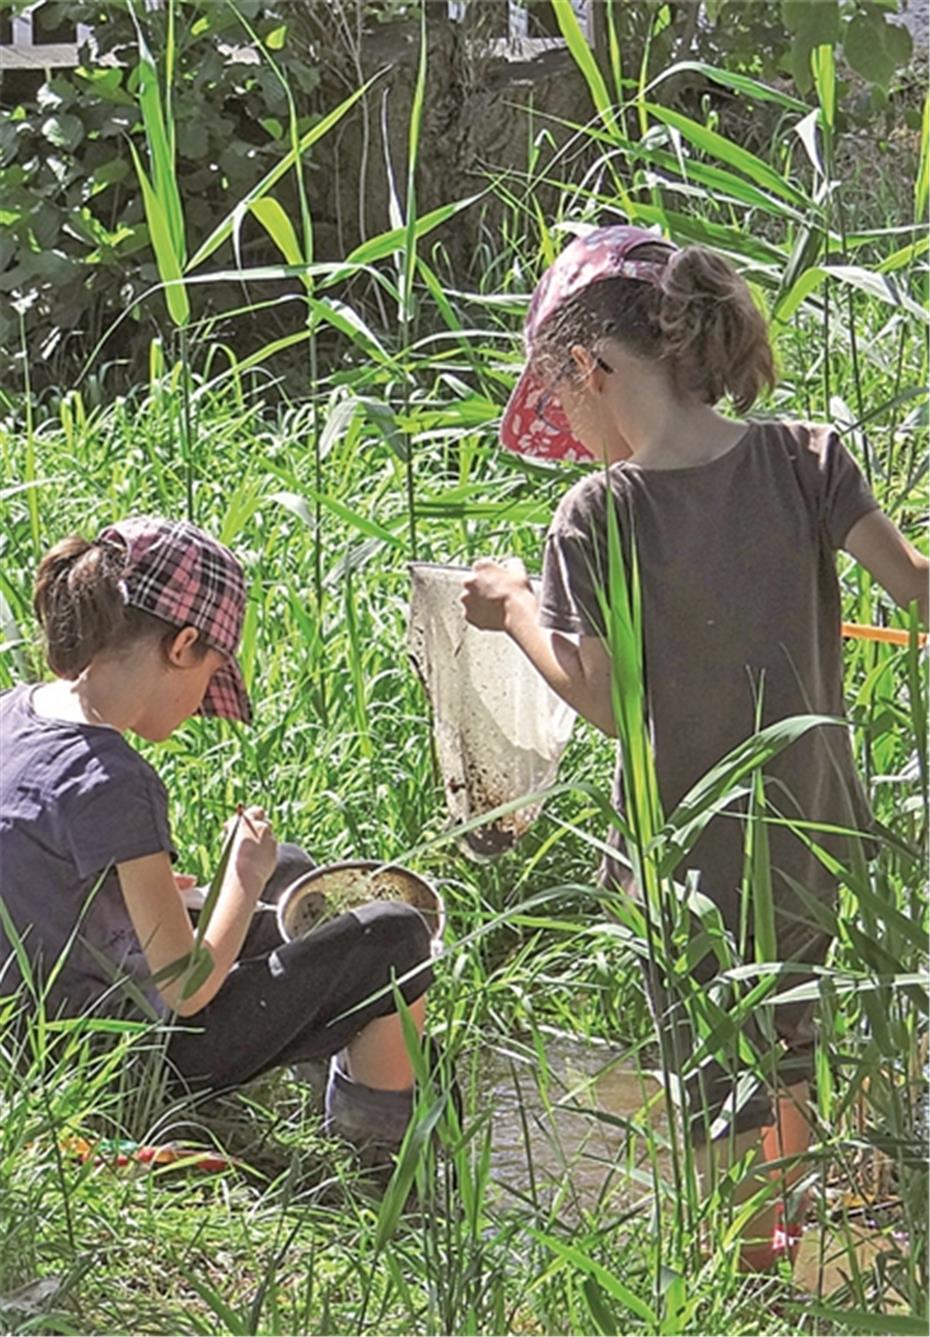 Natur- und Umwelt-
erlebnisse für Kita-Kinder